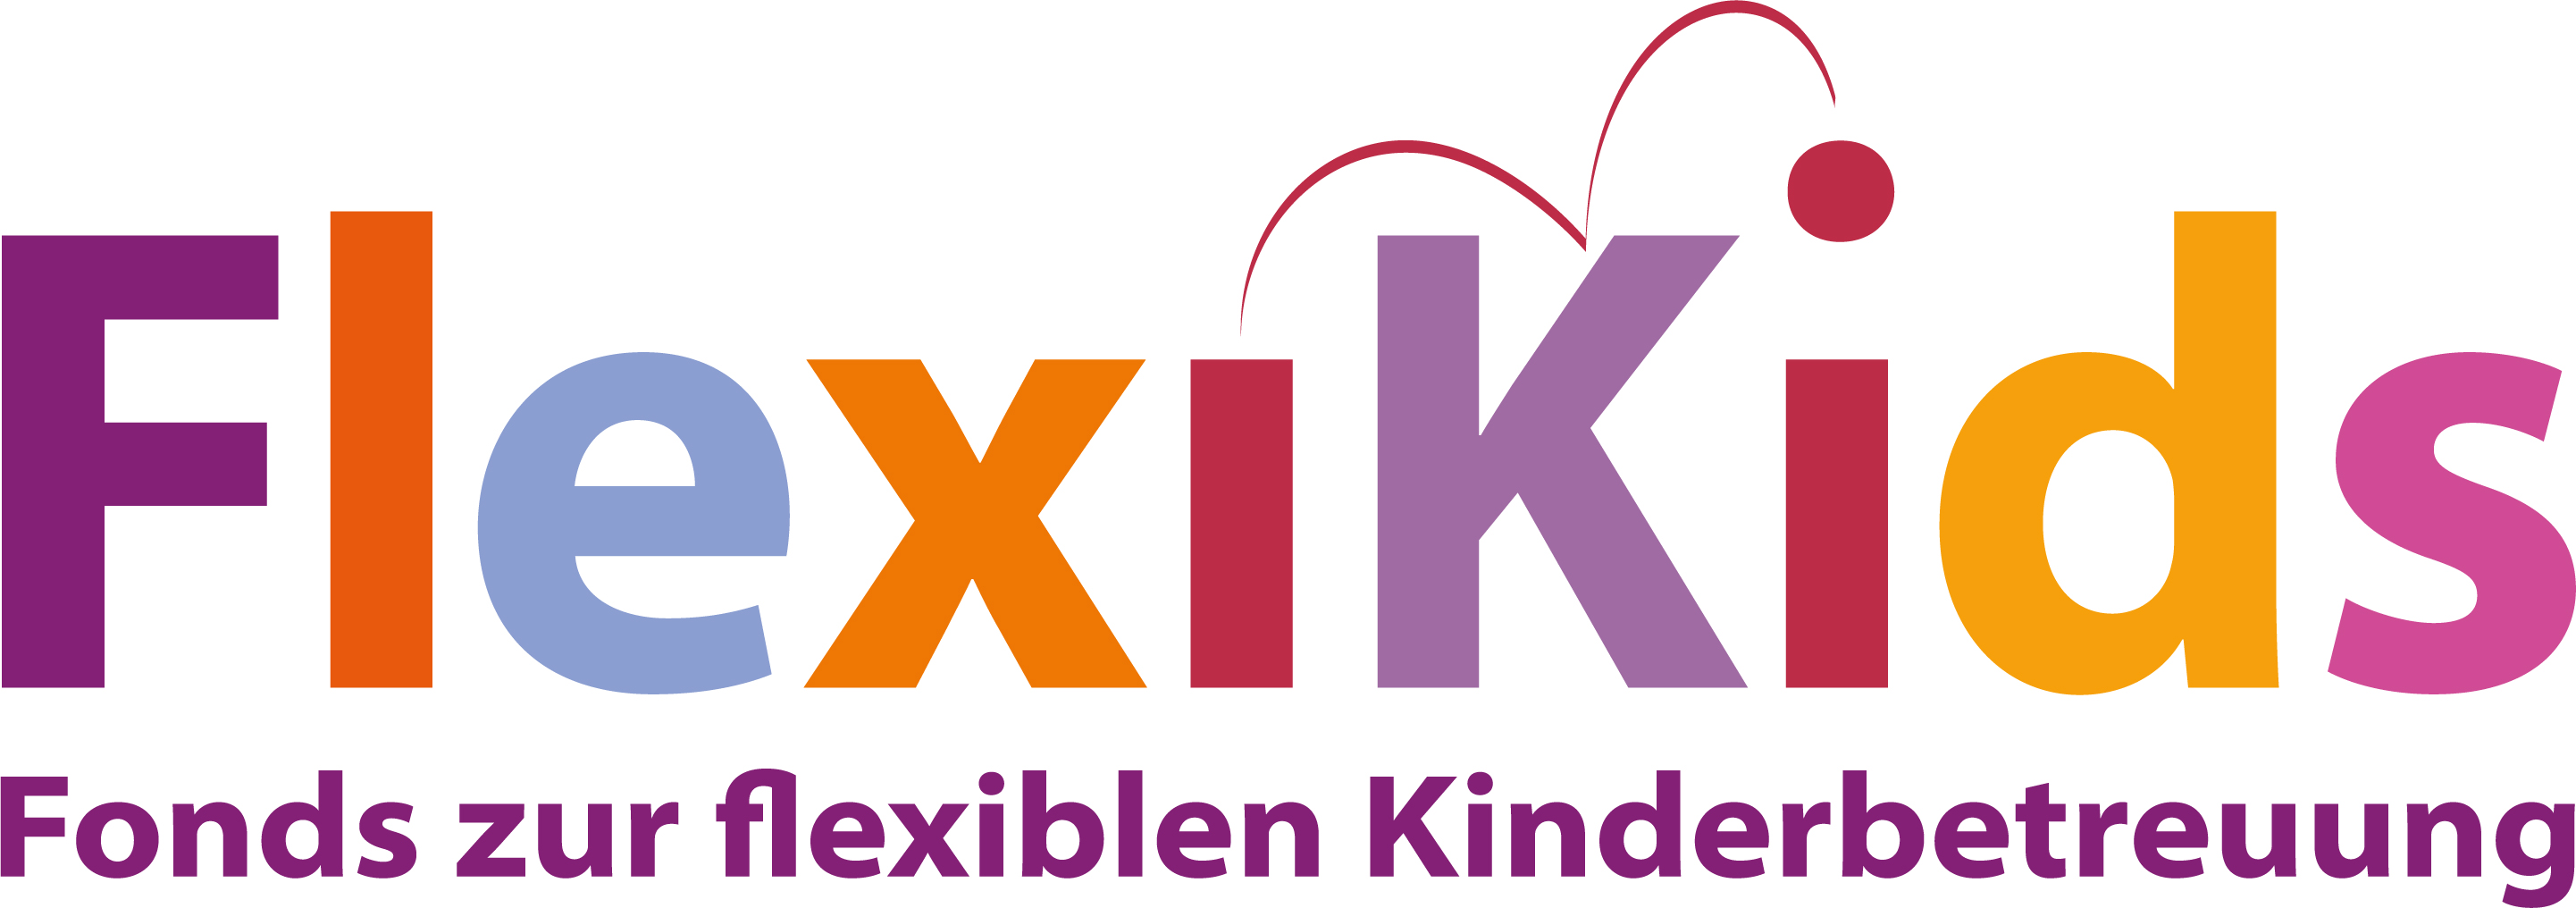 2022_01_20_Flexikids_Logo